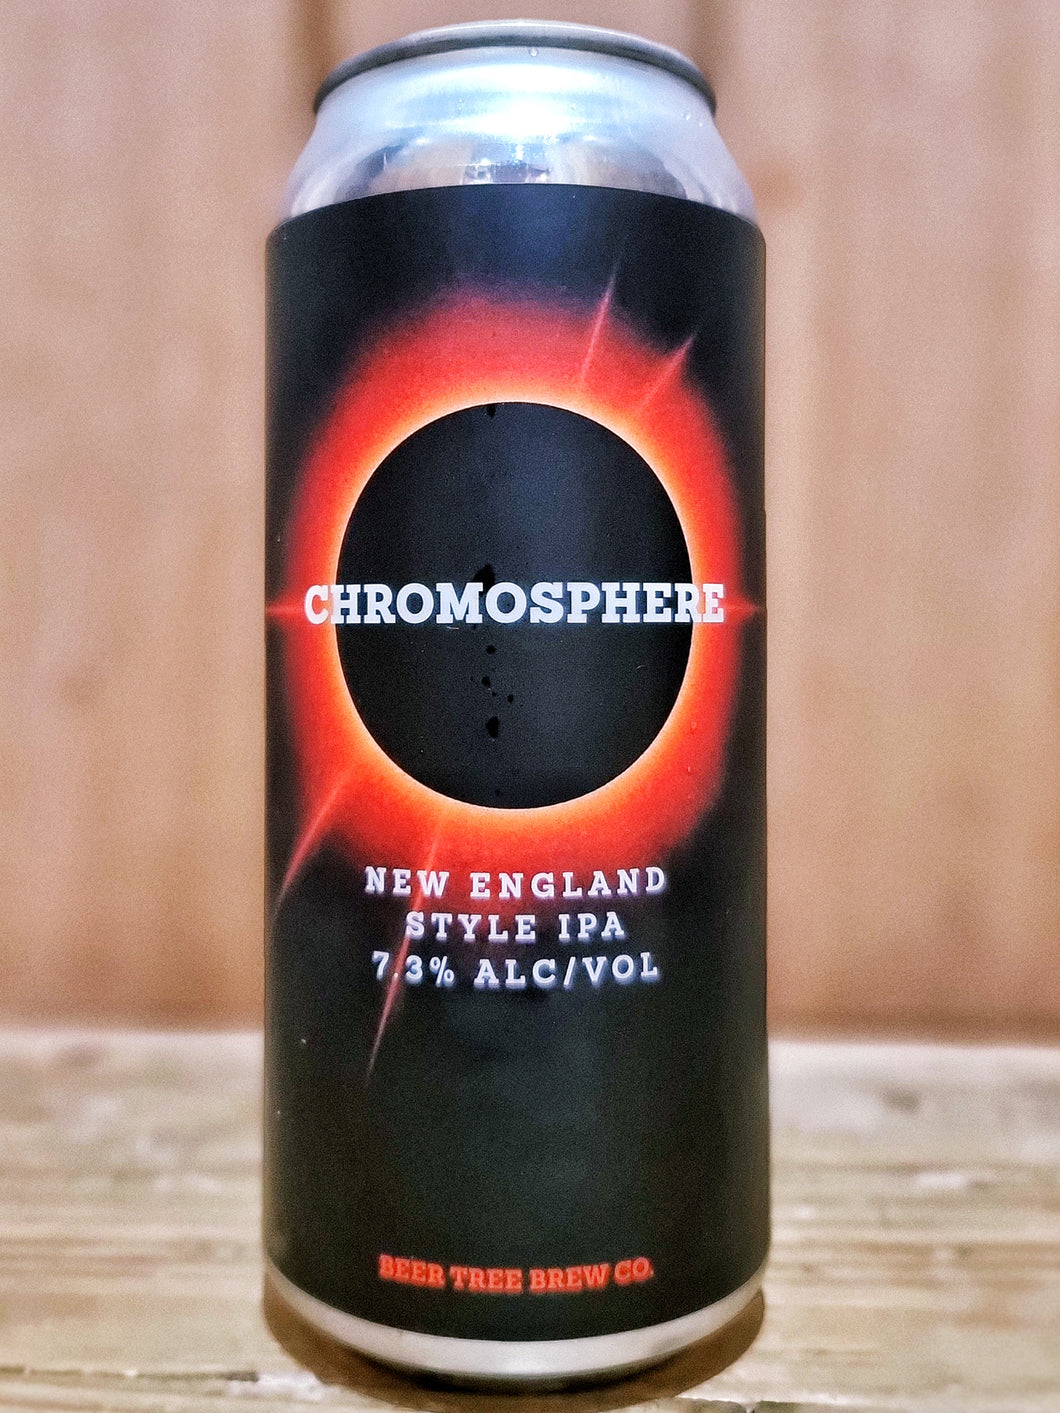 Beer Tree - Chromosphere